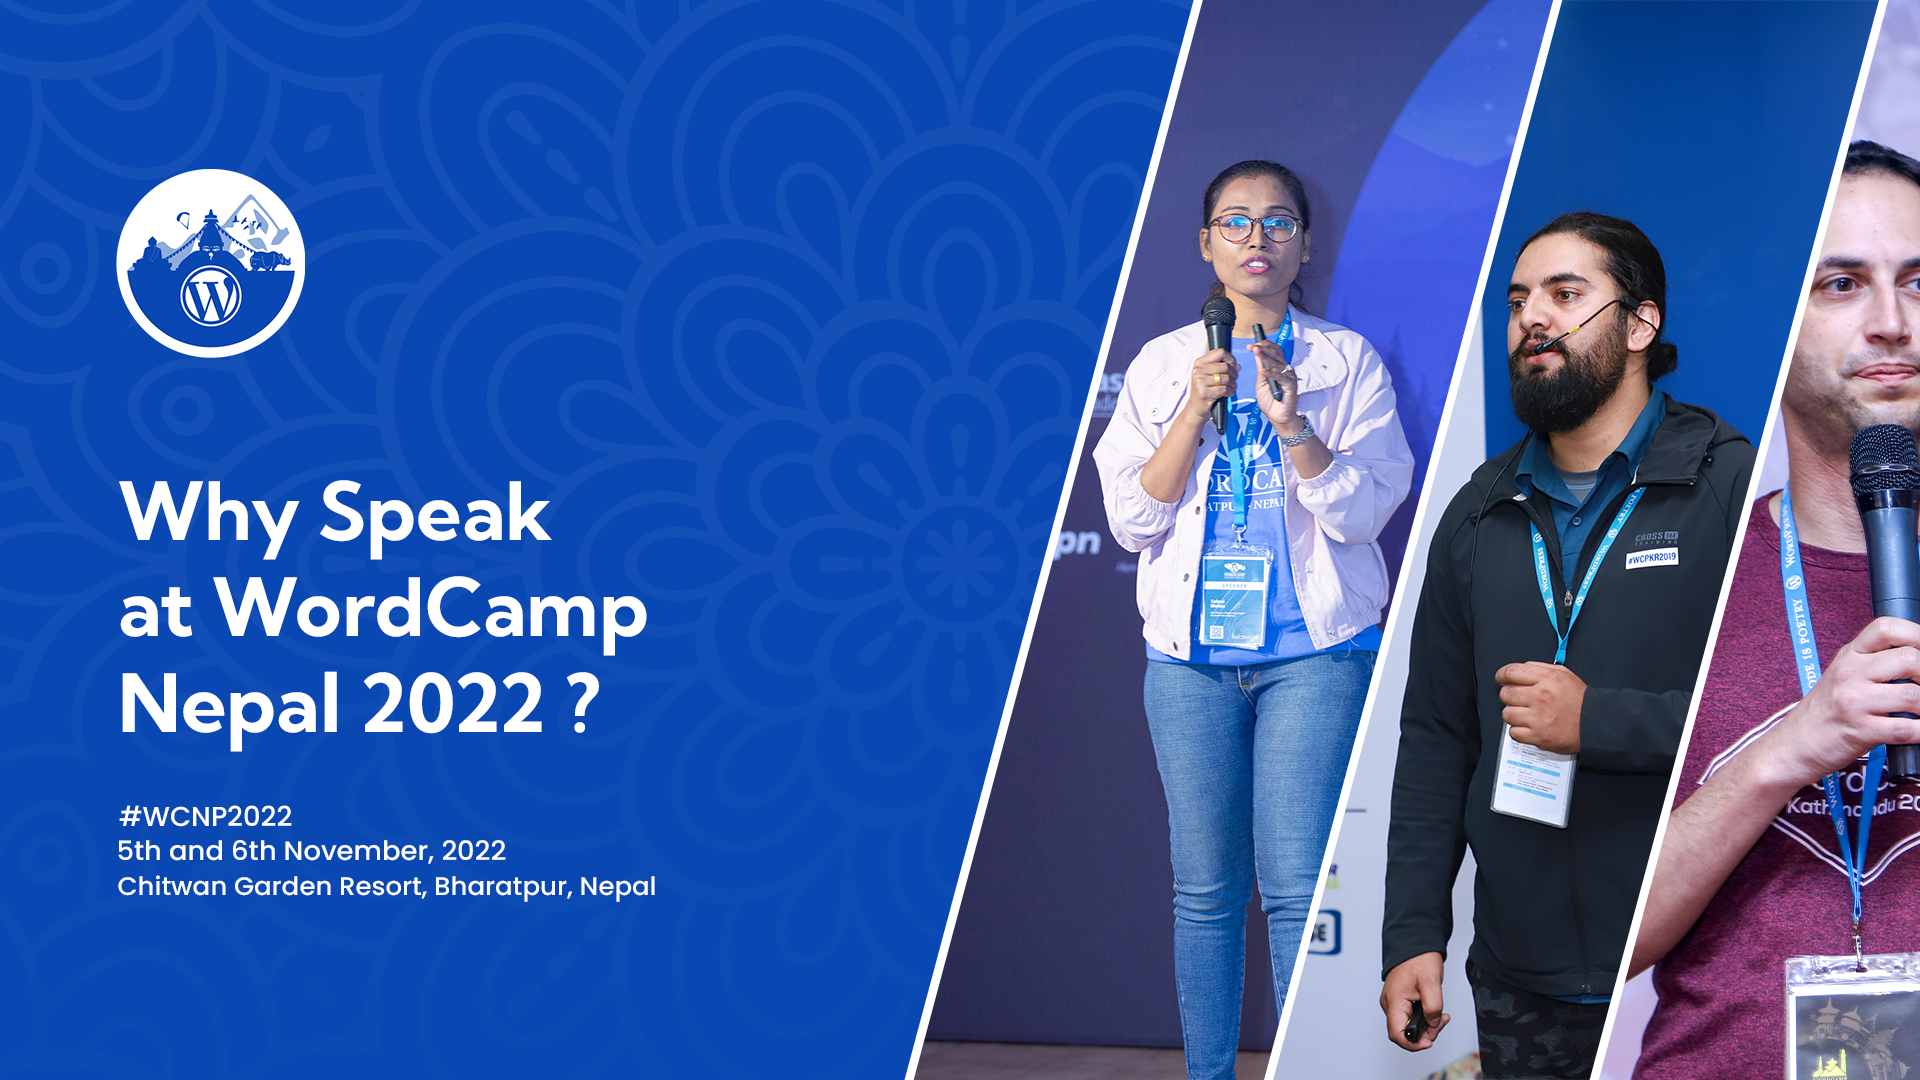 Why Speak at WordCamp Nepal 2022?